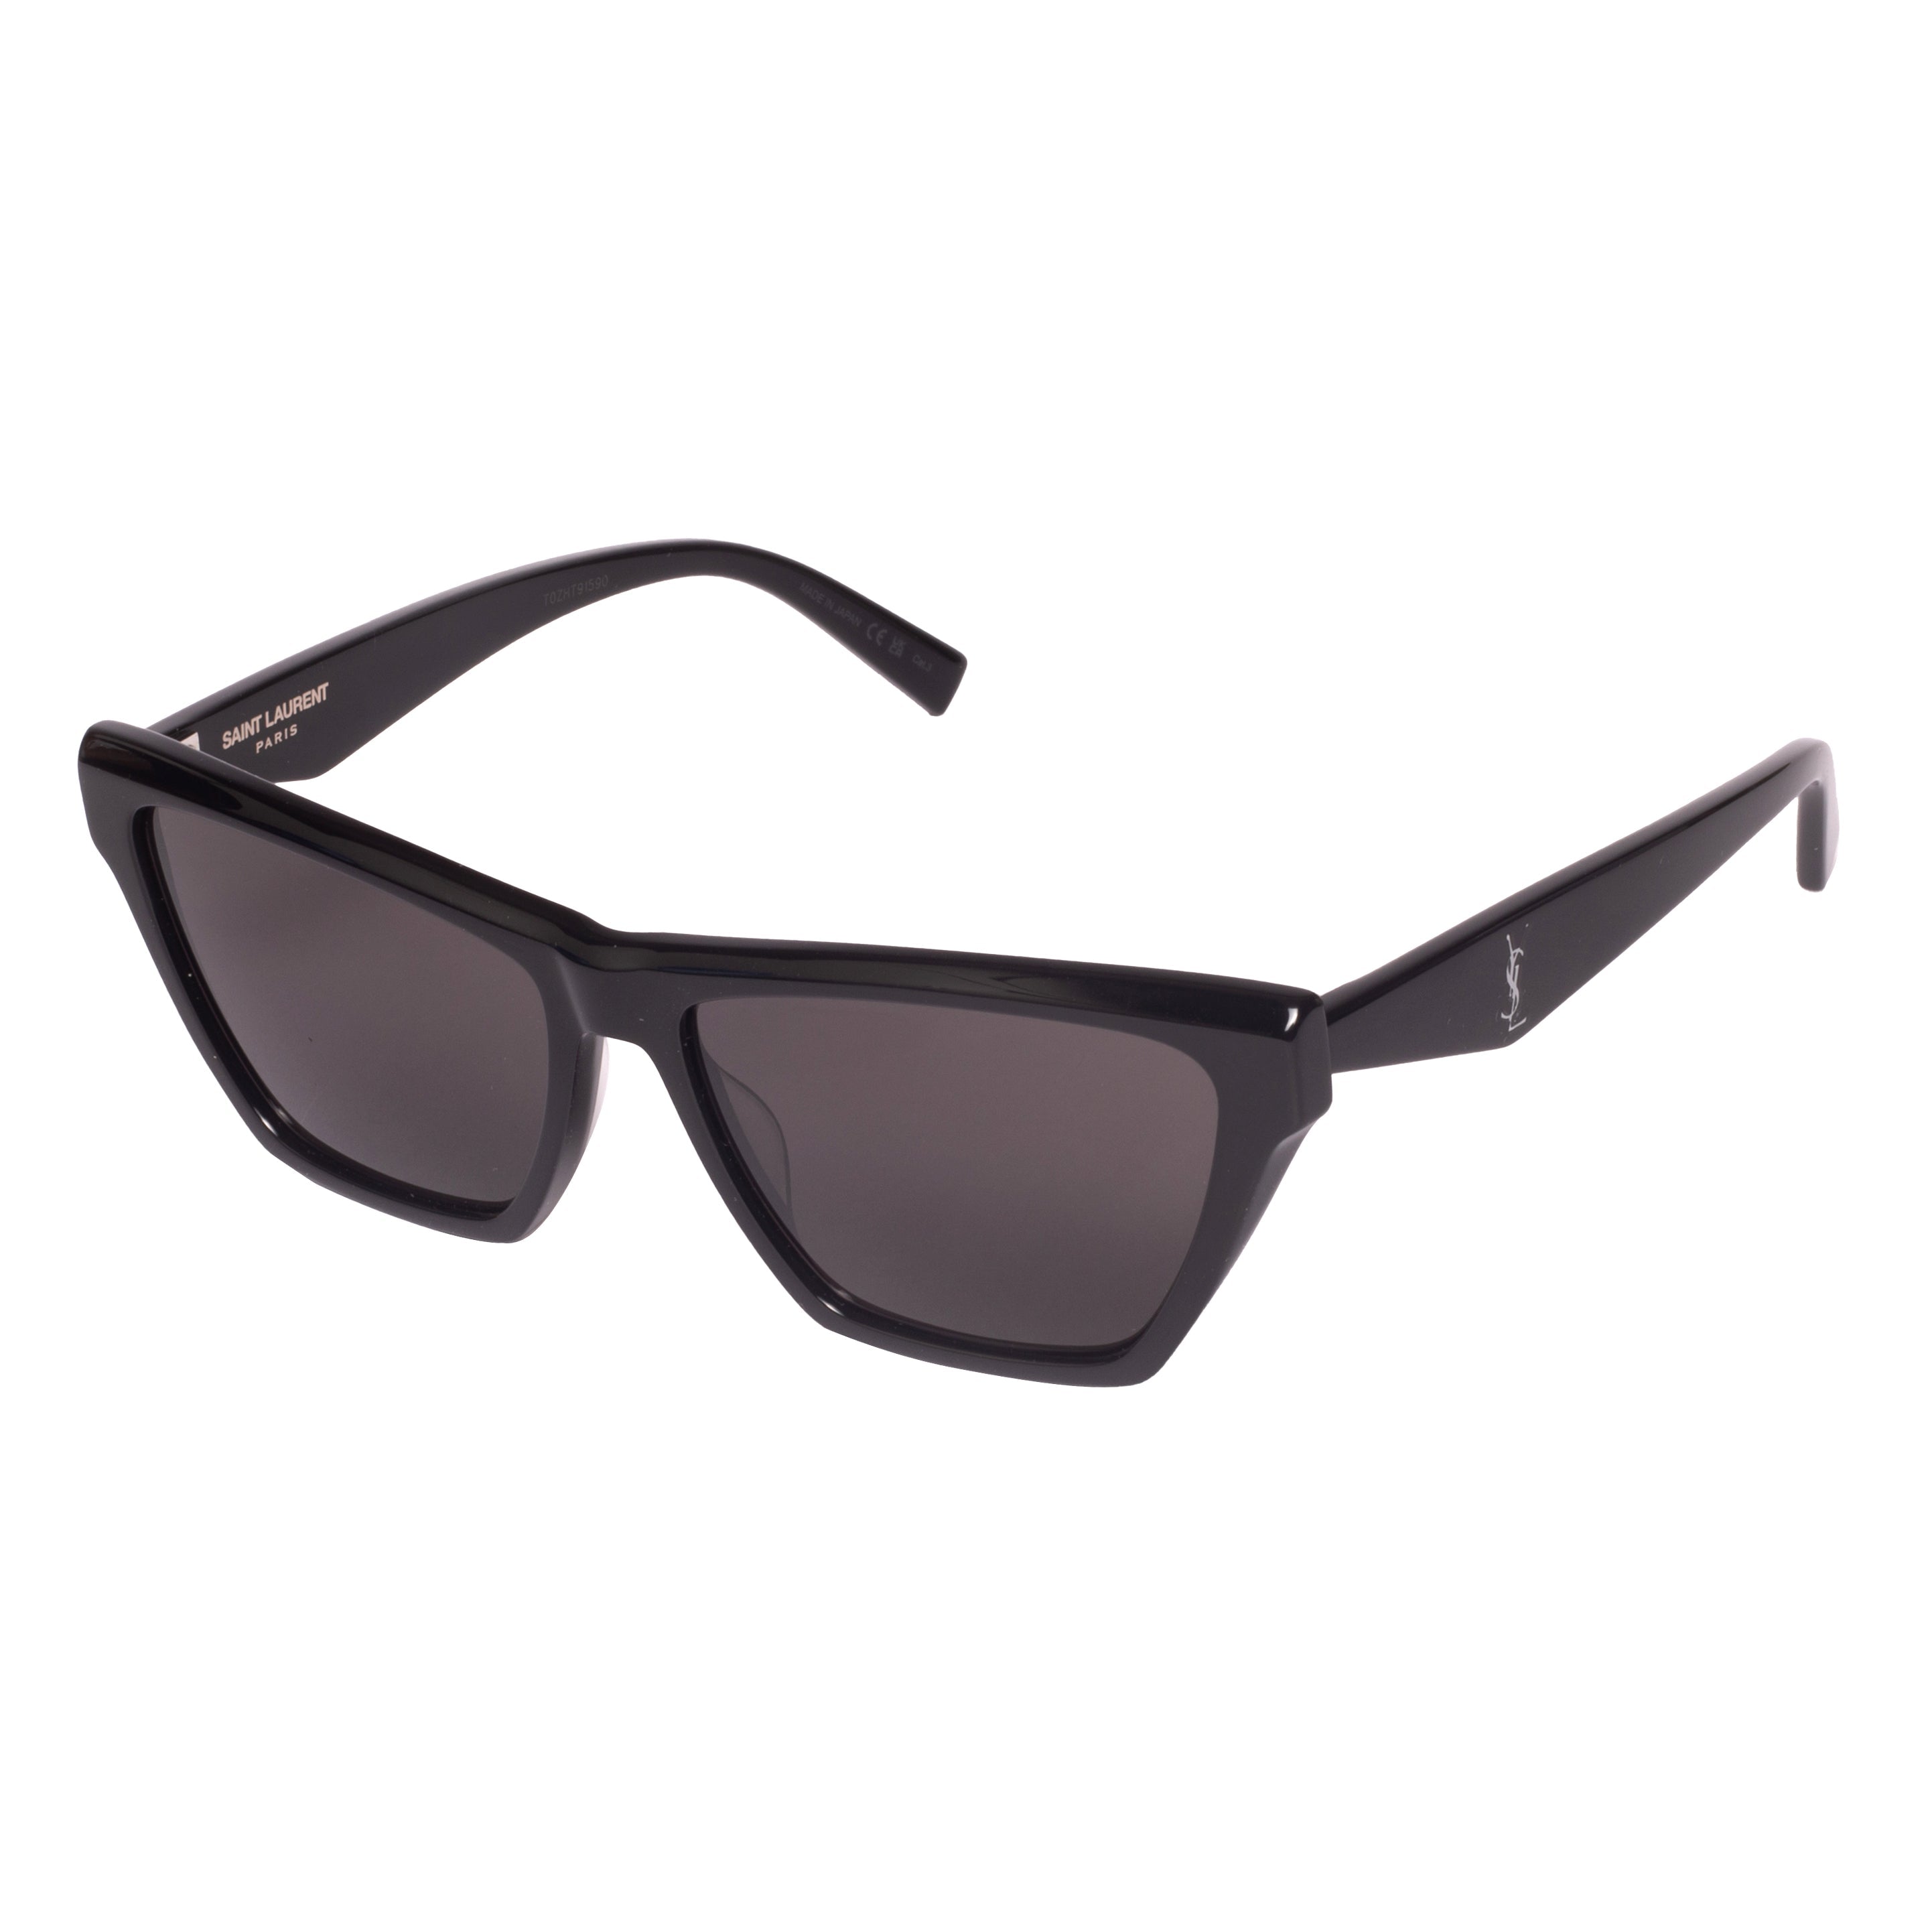 Saint Laurent-SL M103-58-002 Sunglasses - Premium Sunglasses from Saint Laurent - Just Rs. 24100! Shop now at Laxmi Opticians